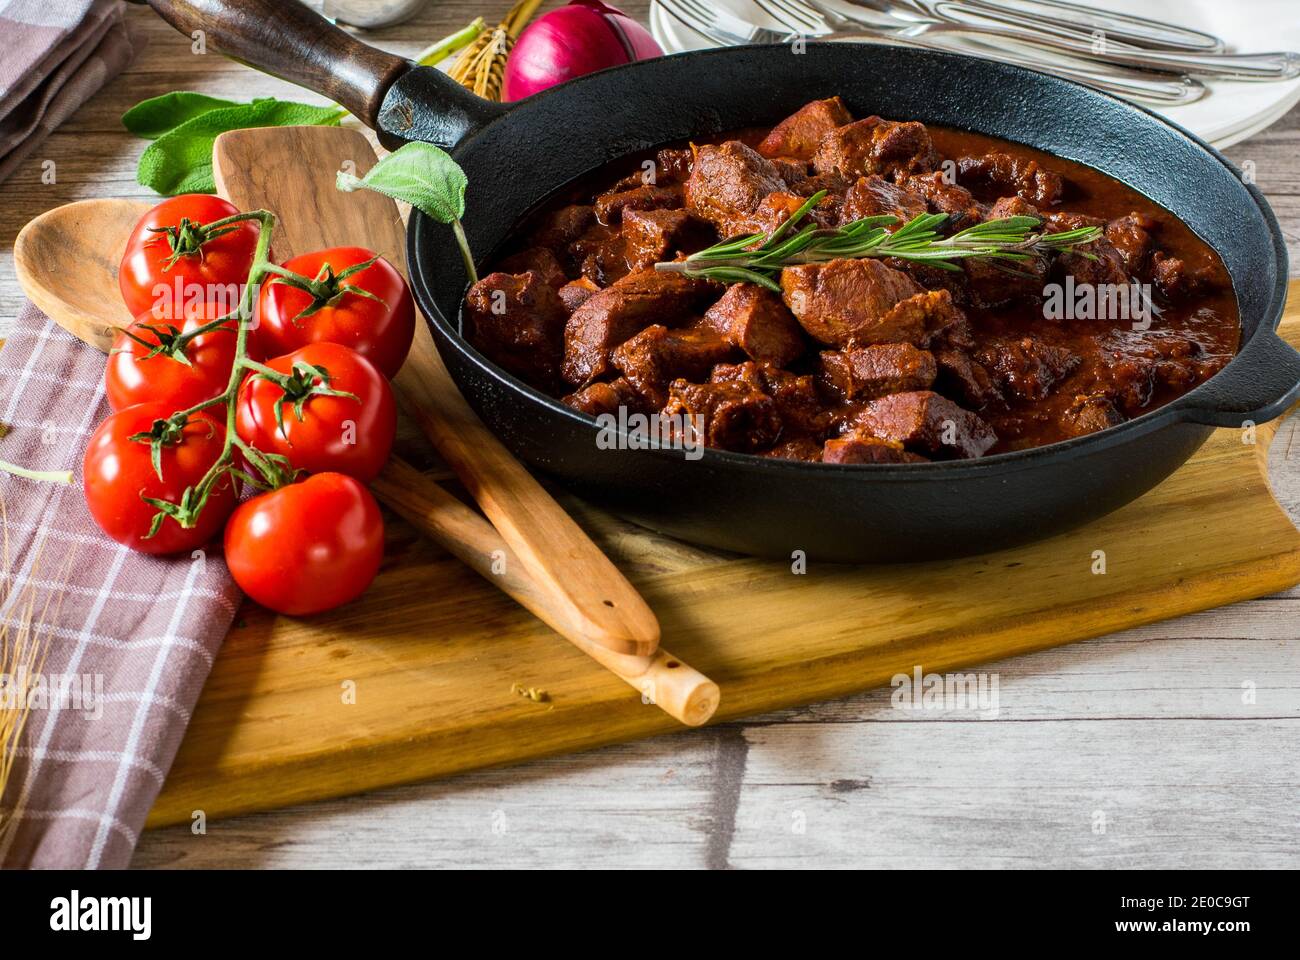 Italienische geschmorte Schweinefleisch Ragout mit köstlichen Rotwein,  Rosmarin, Tomaten, Knoblauch-Sauce in einer rustikalen Pfanne serviert  Stockfotografie - Alamy